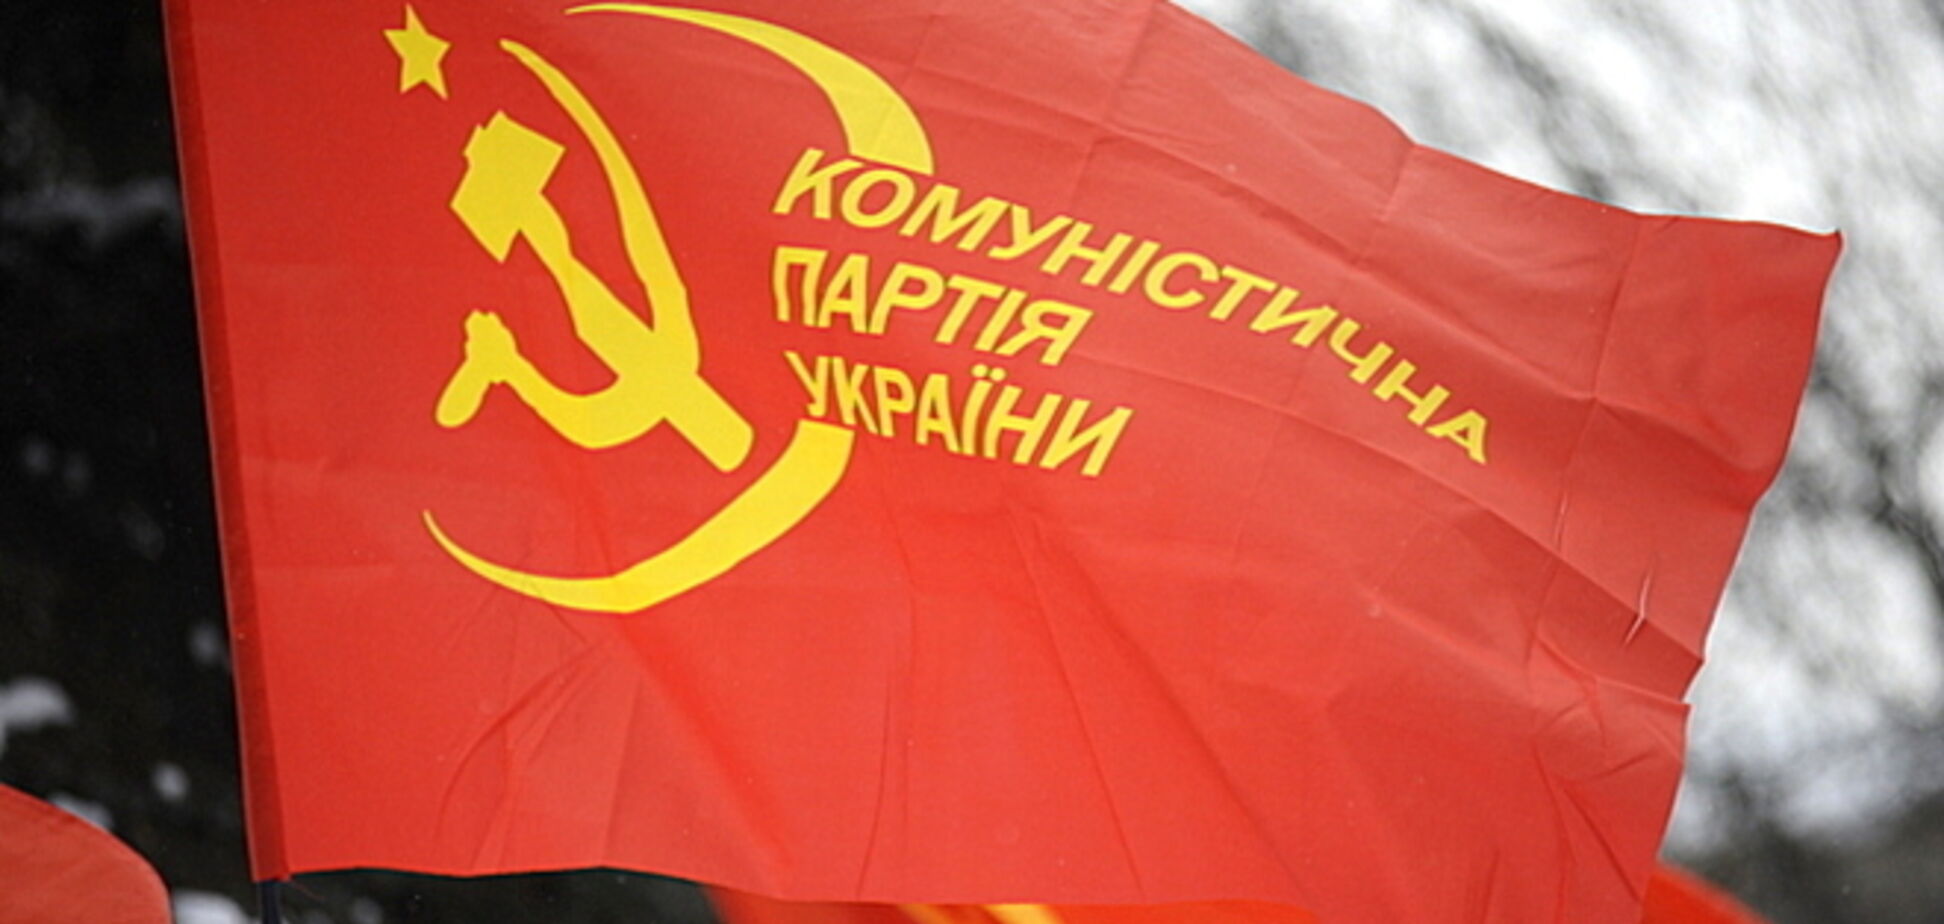 Законопроект о запрете коммунистической идеологии идет в разрез с европейскими ценностями - эксперт